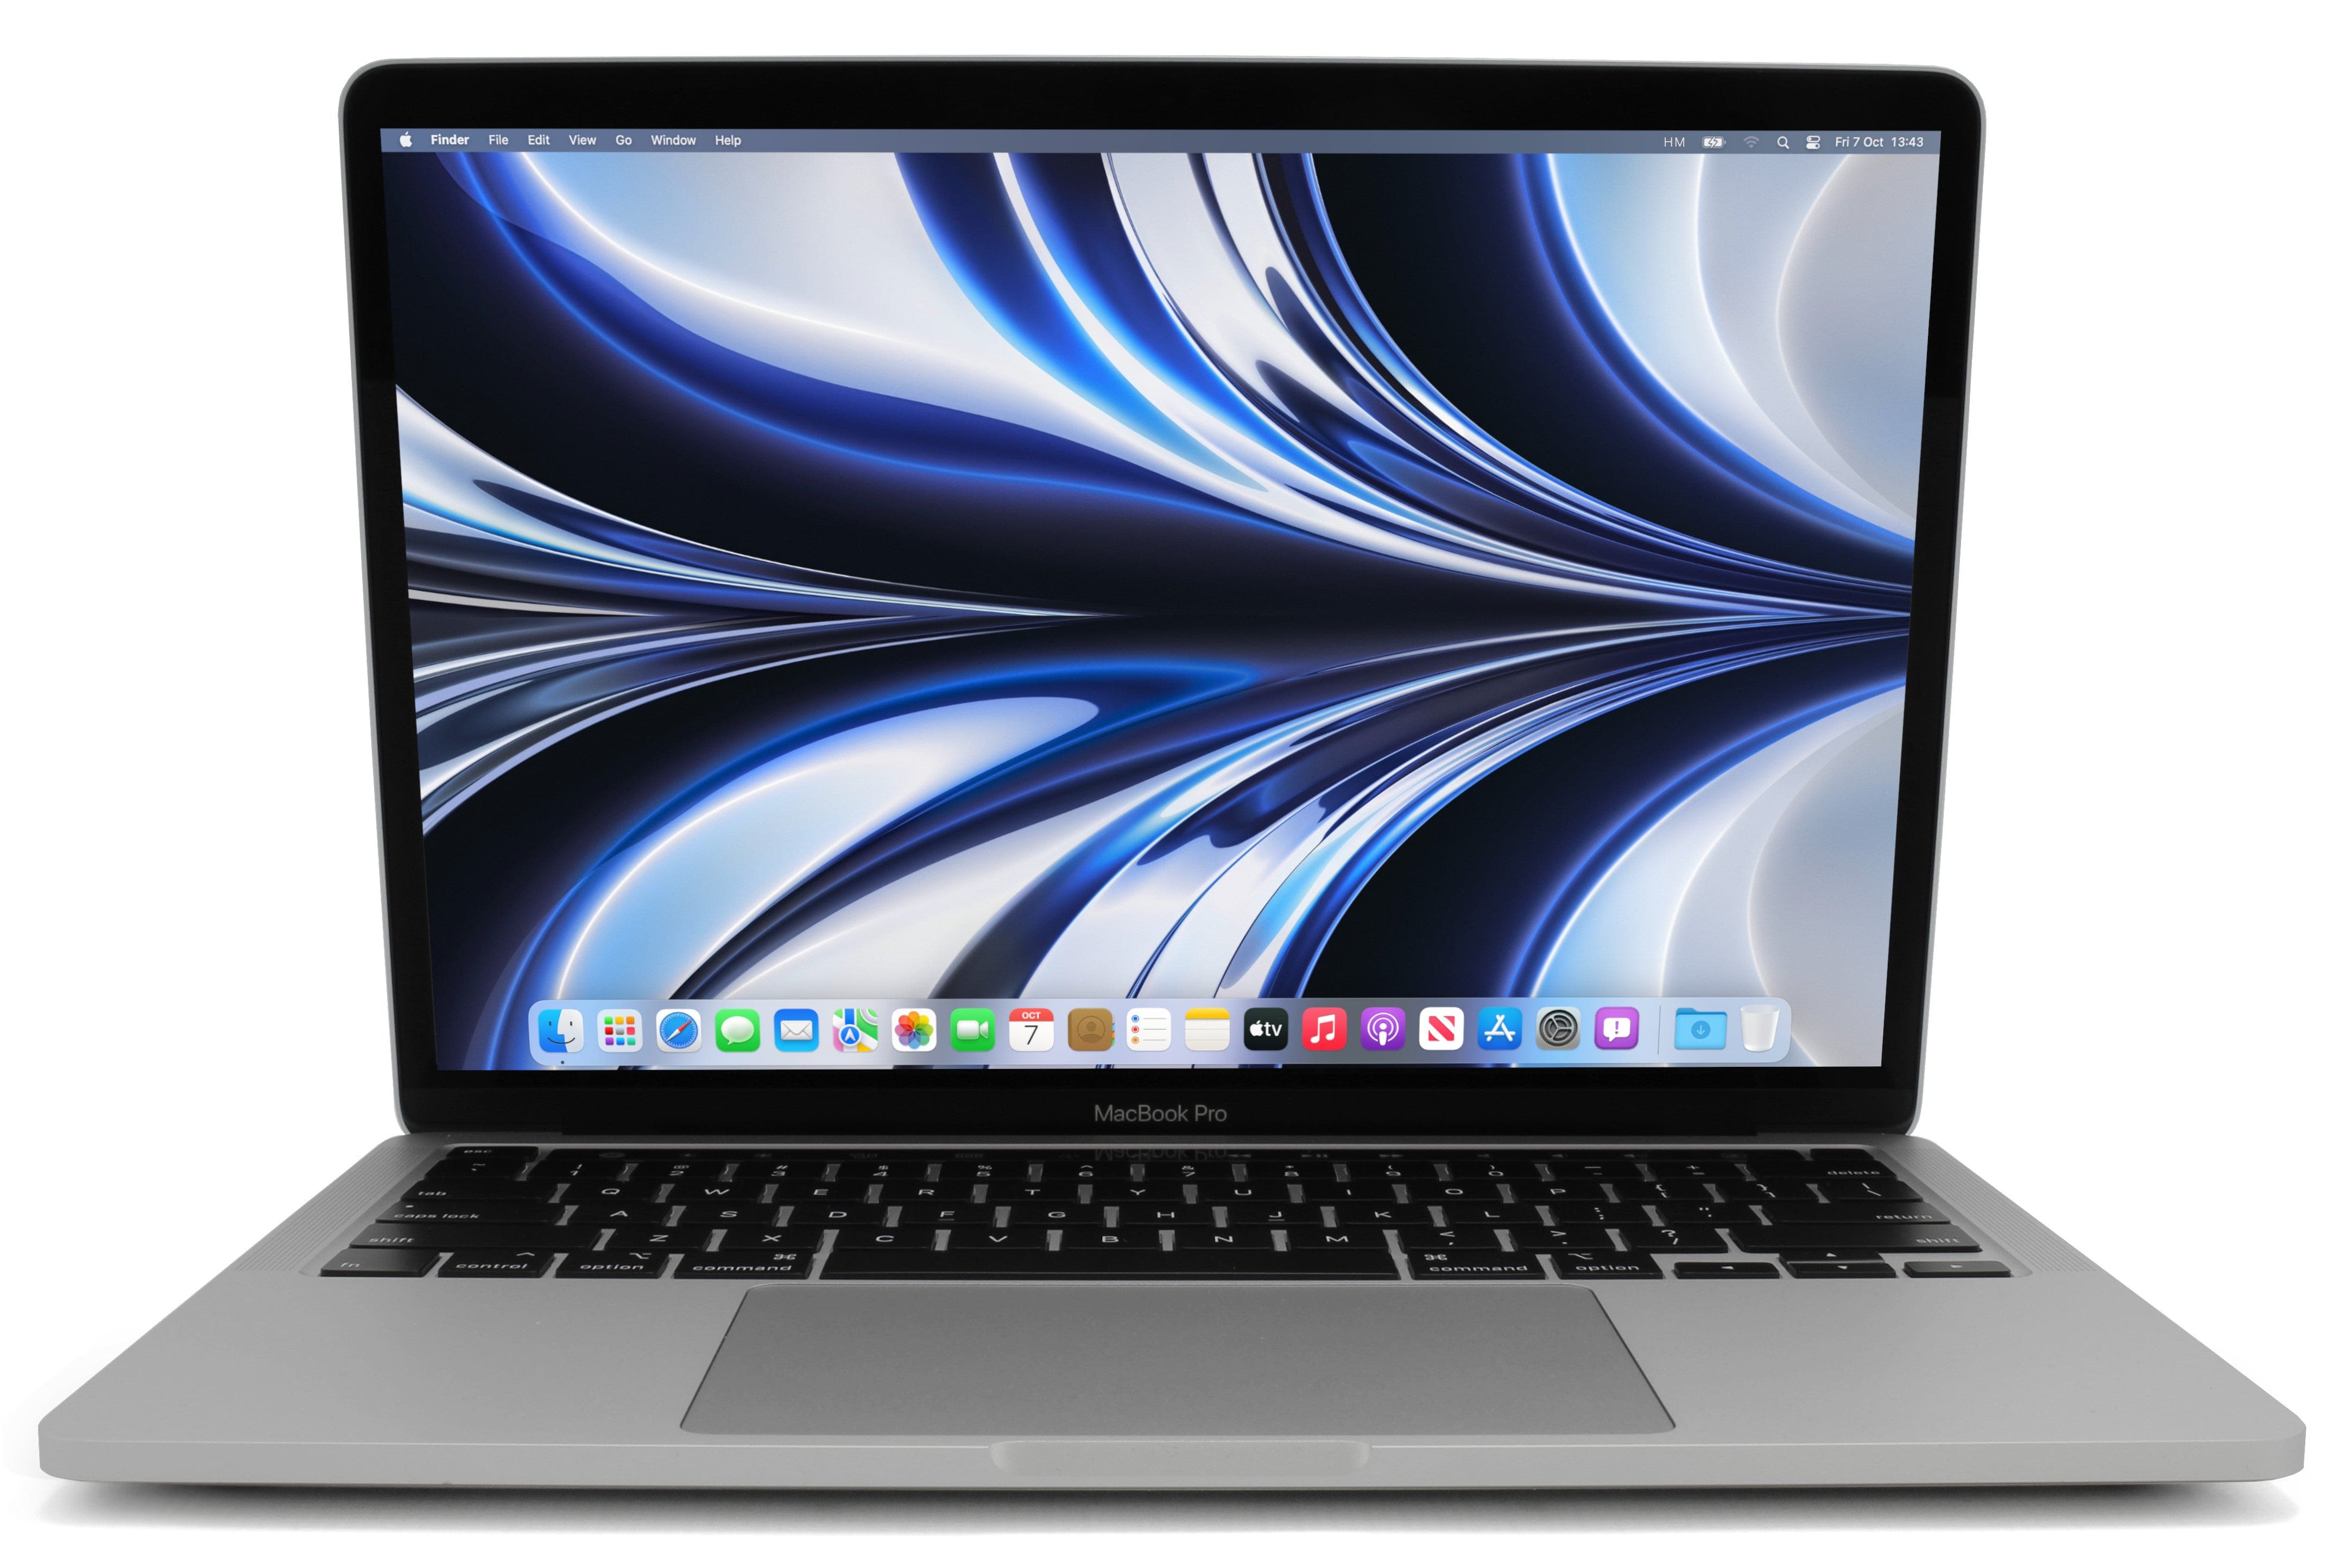 MacBook Air 13-inch M1 (Silver, 2020) - Good